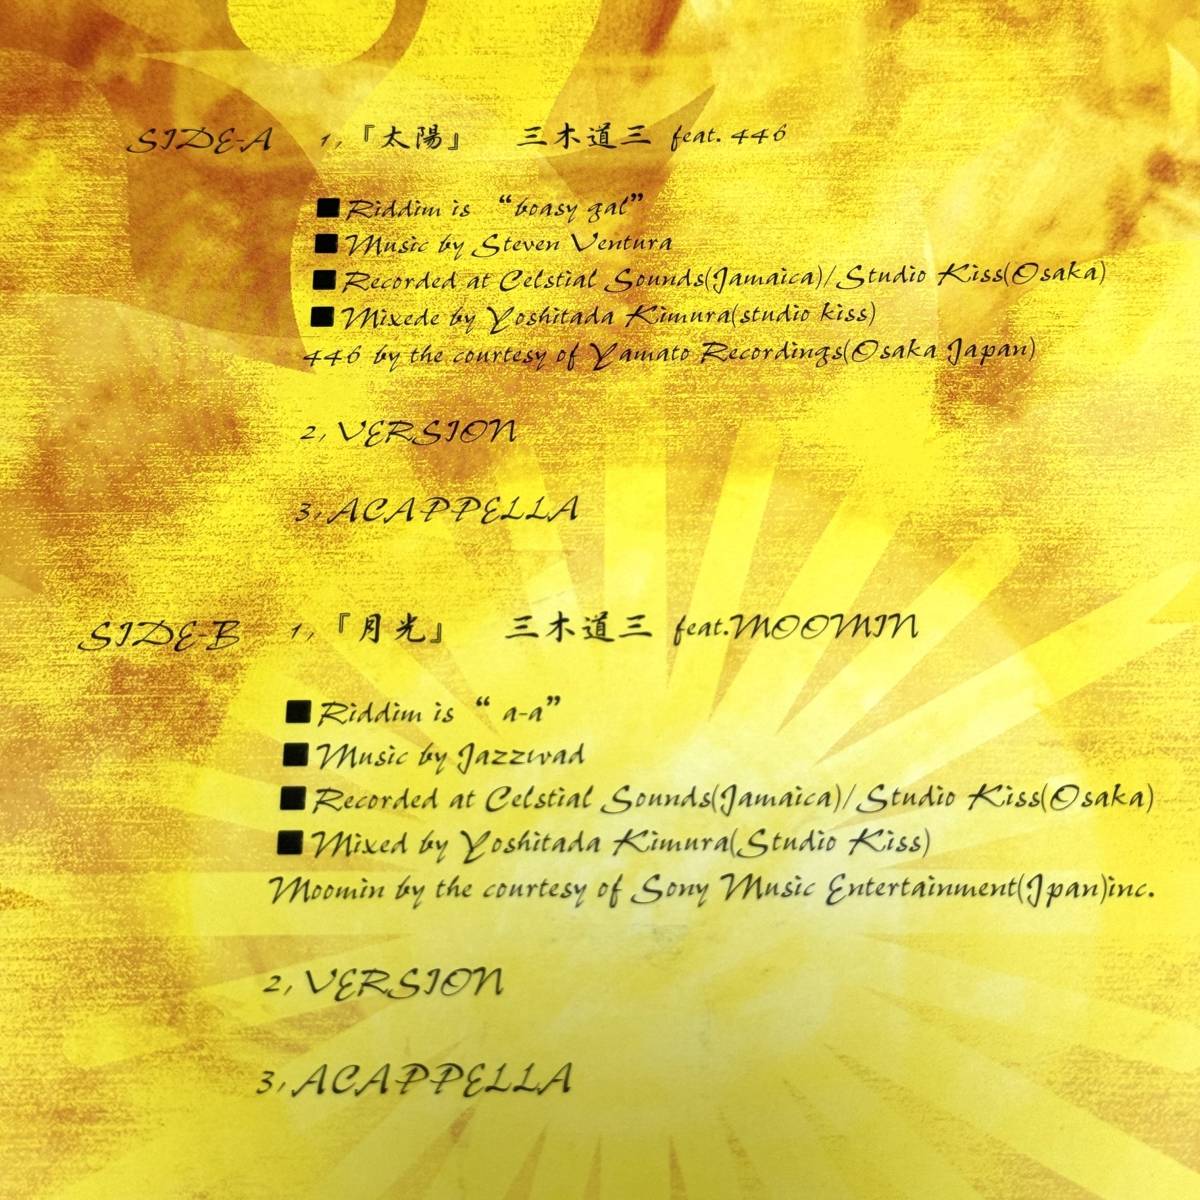 三木道三 feat. 446「太陽」 / feat. Moomin「月光」'01年 大和レコーディングス【12inchレコード】【極美中古】_画像3